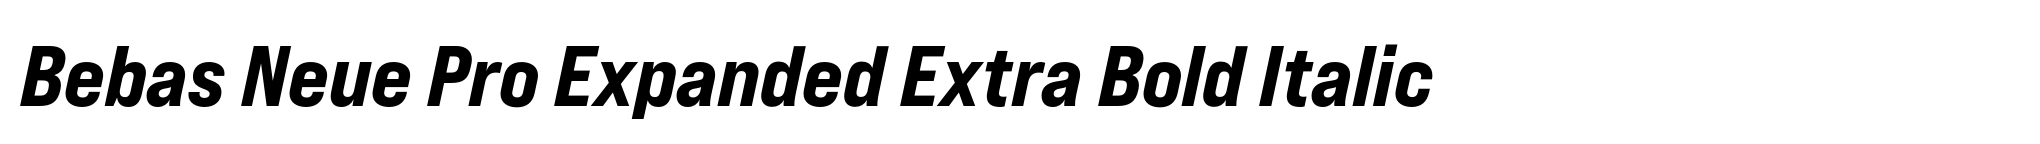 Bebas Neue Pro Expanded Extra Bold Italic image